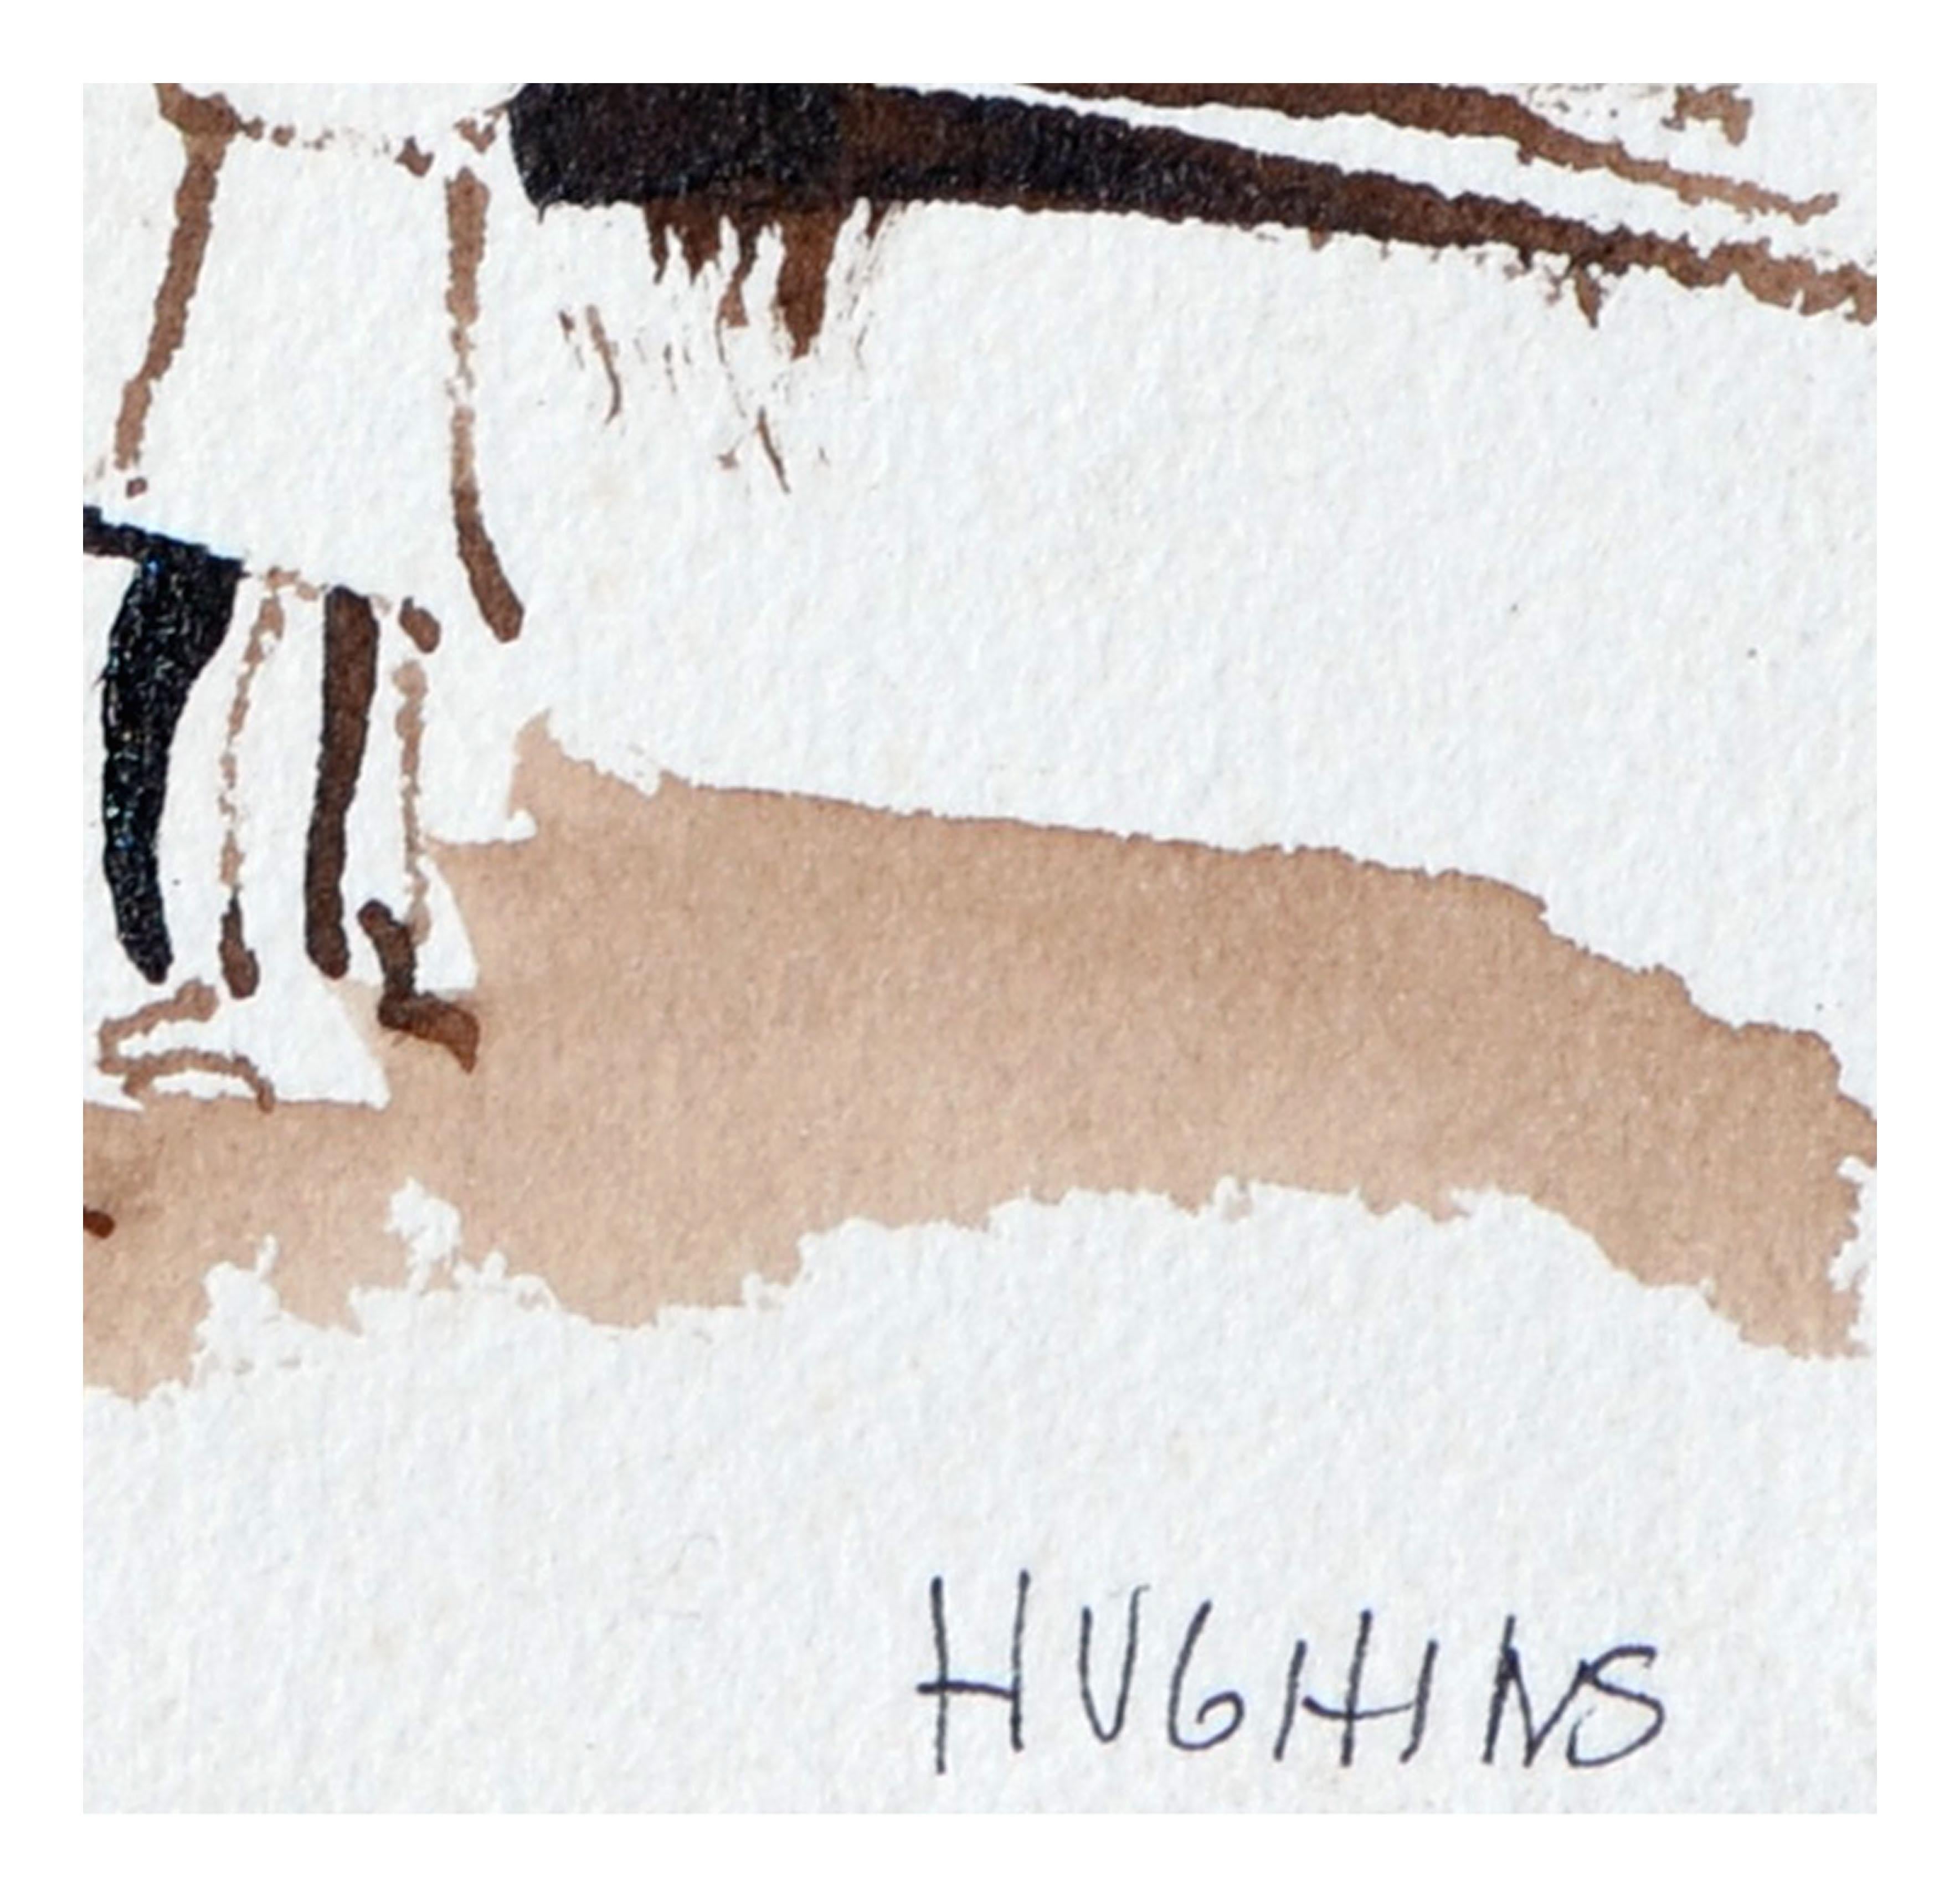 hughins